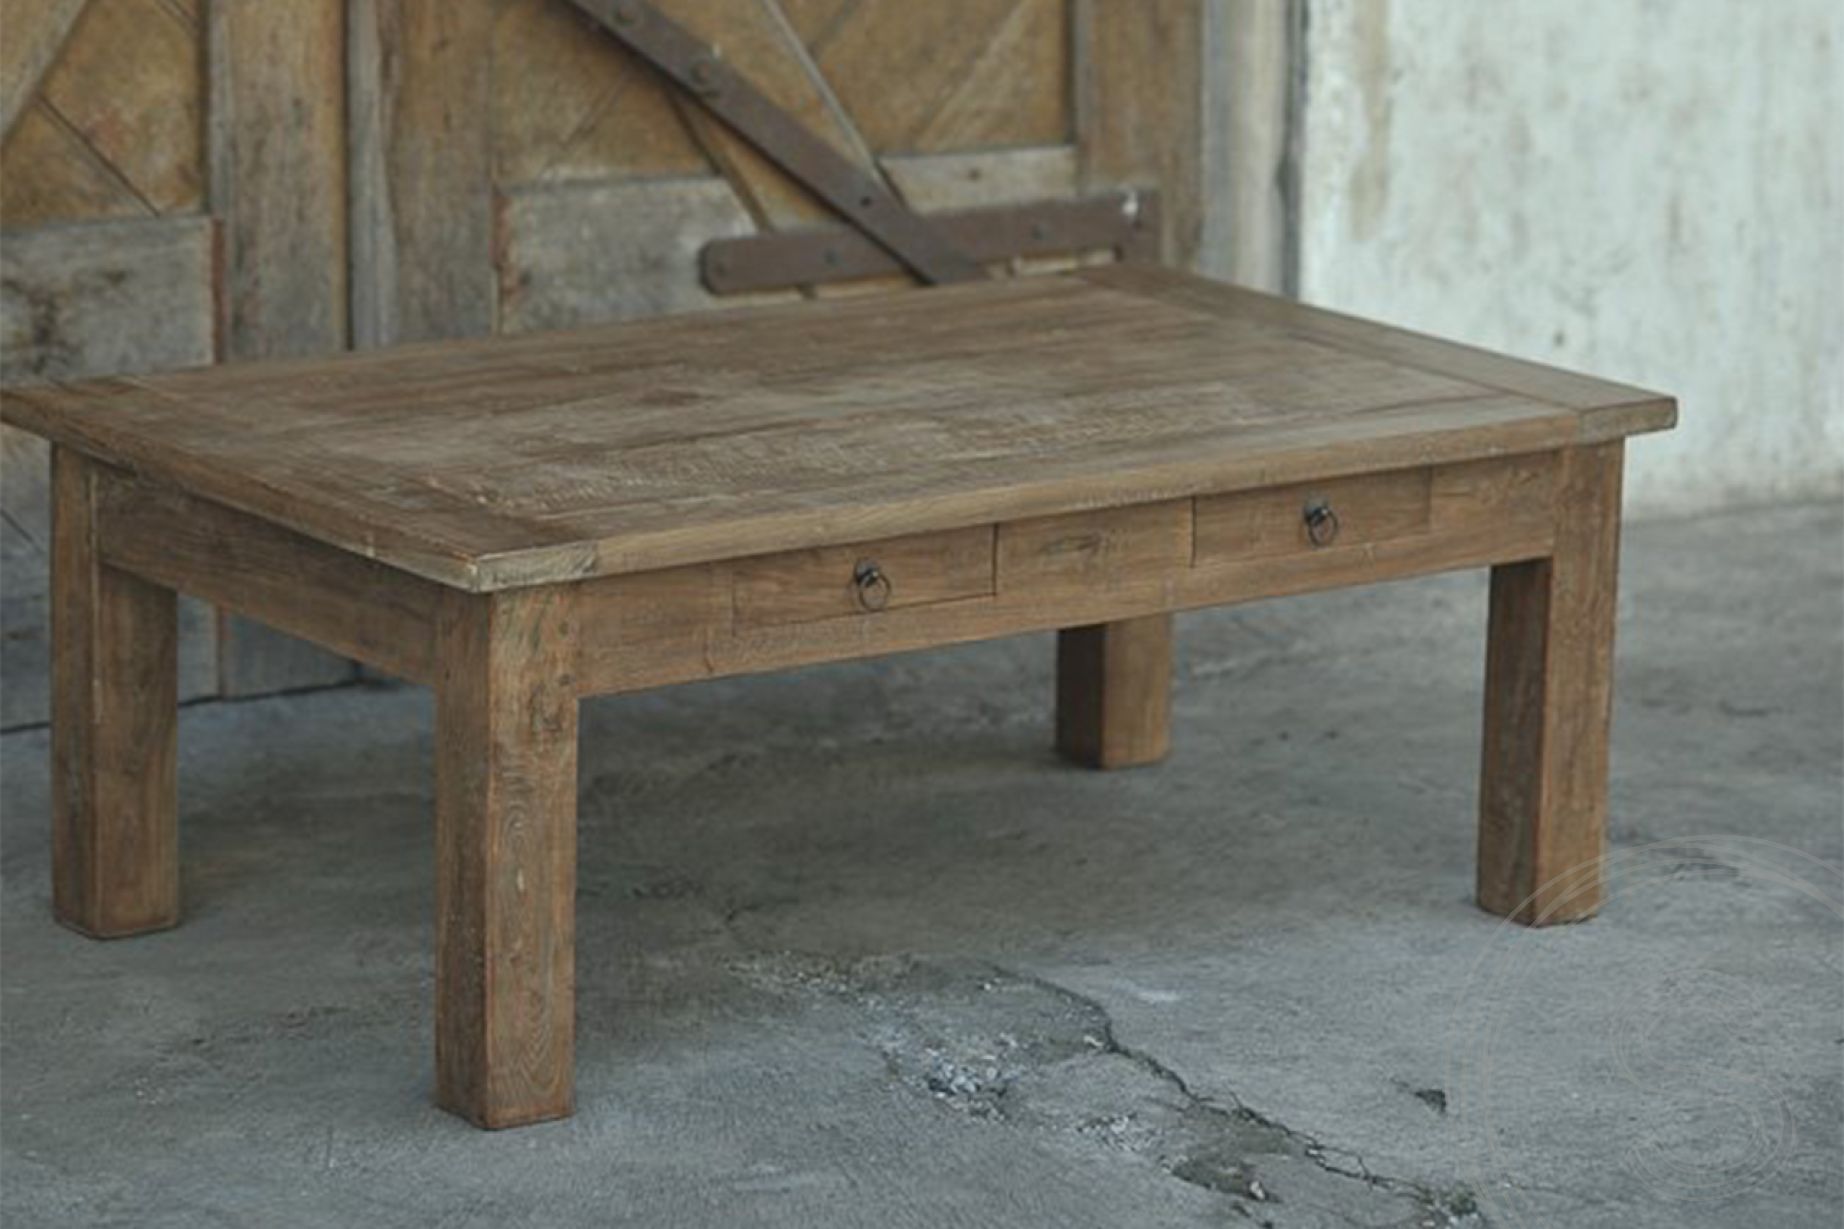 Onbemand Zichtbaar Nominaal Teak salontafel oud hout 110 x 70